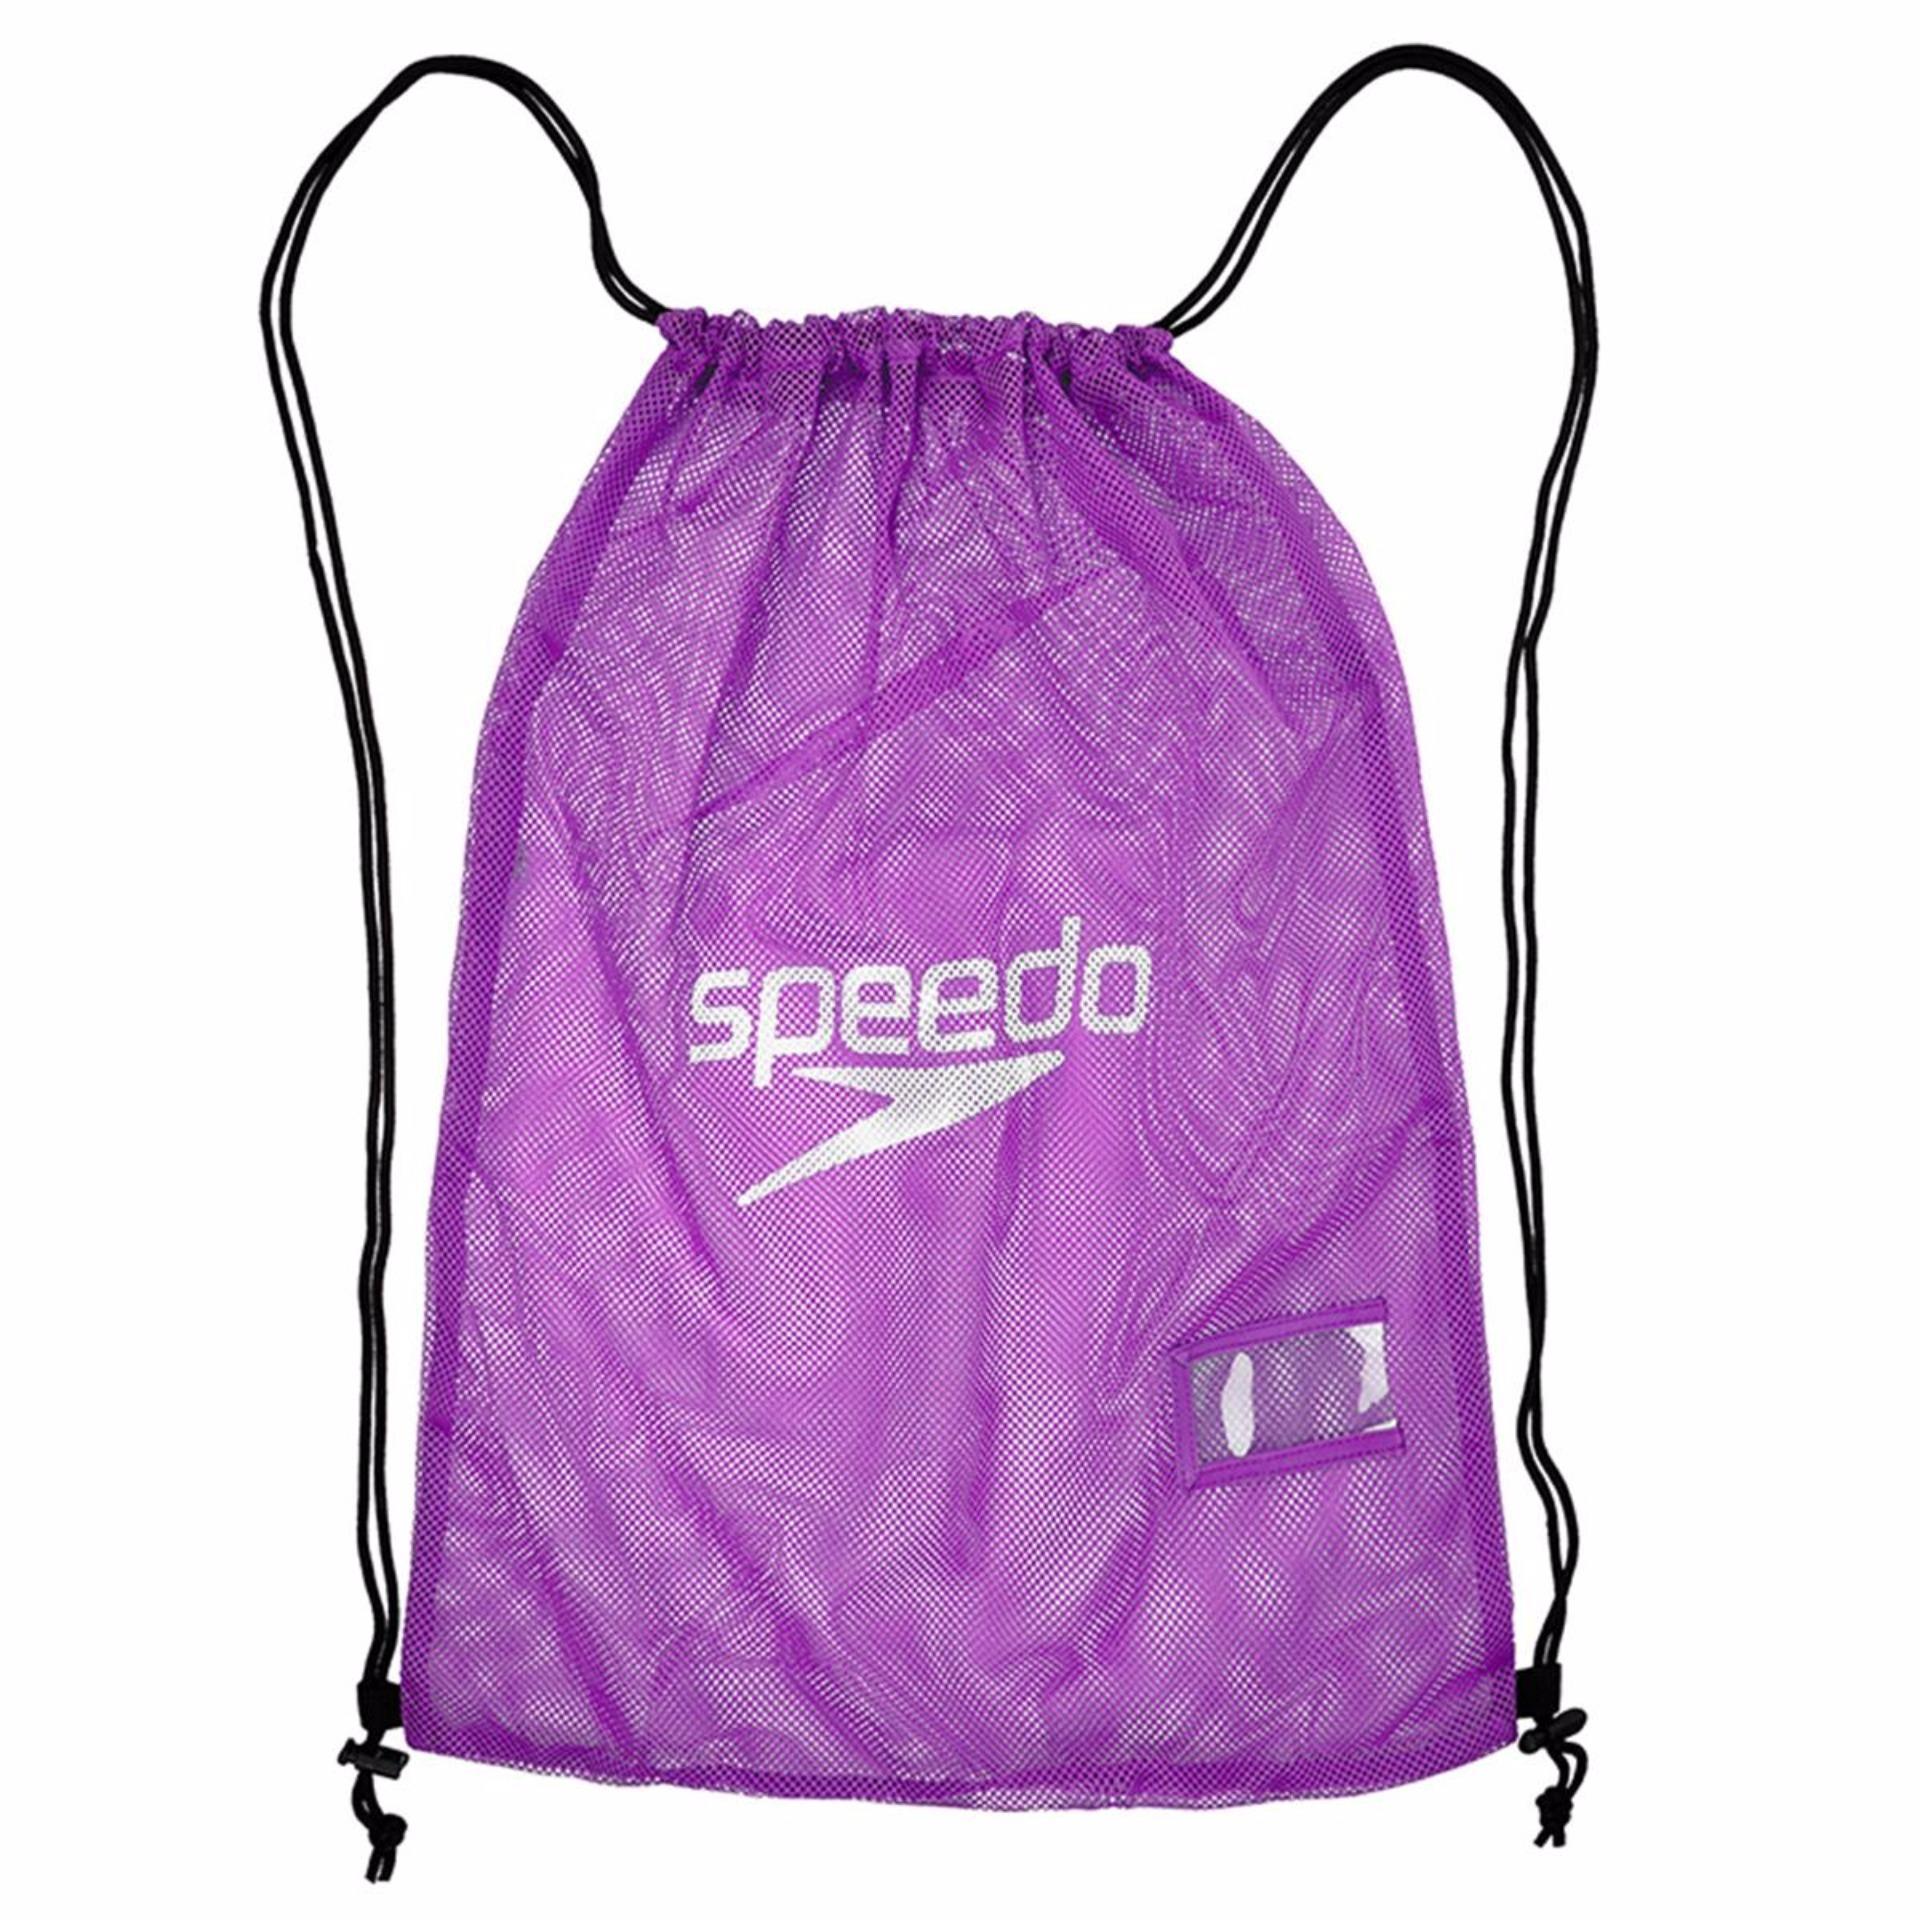 Túi đựng đồ bơi Speedo Equipment Mesh (Tím)